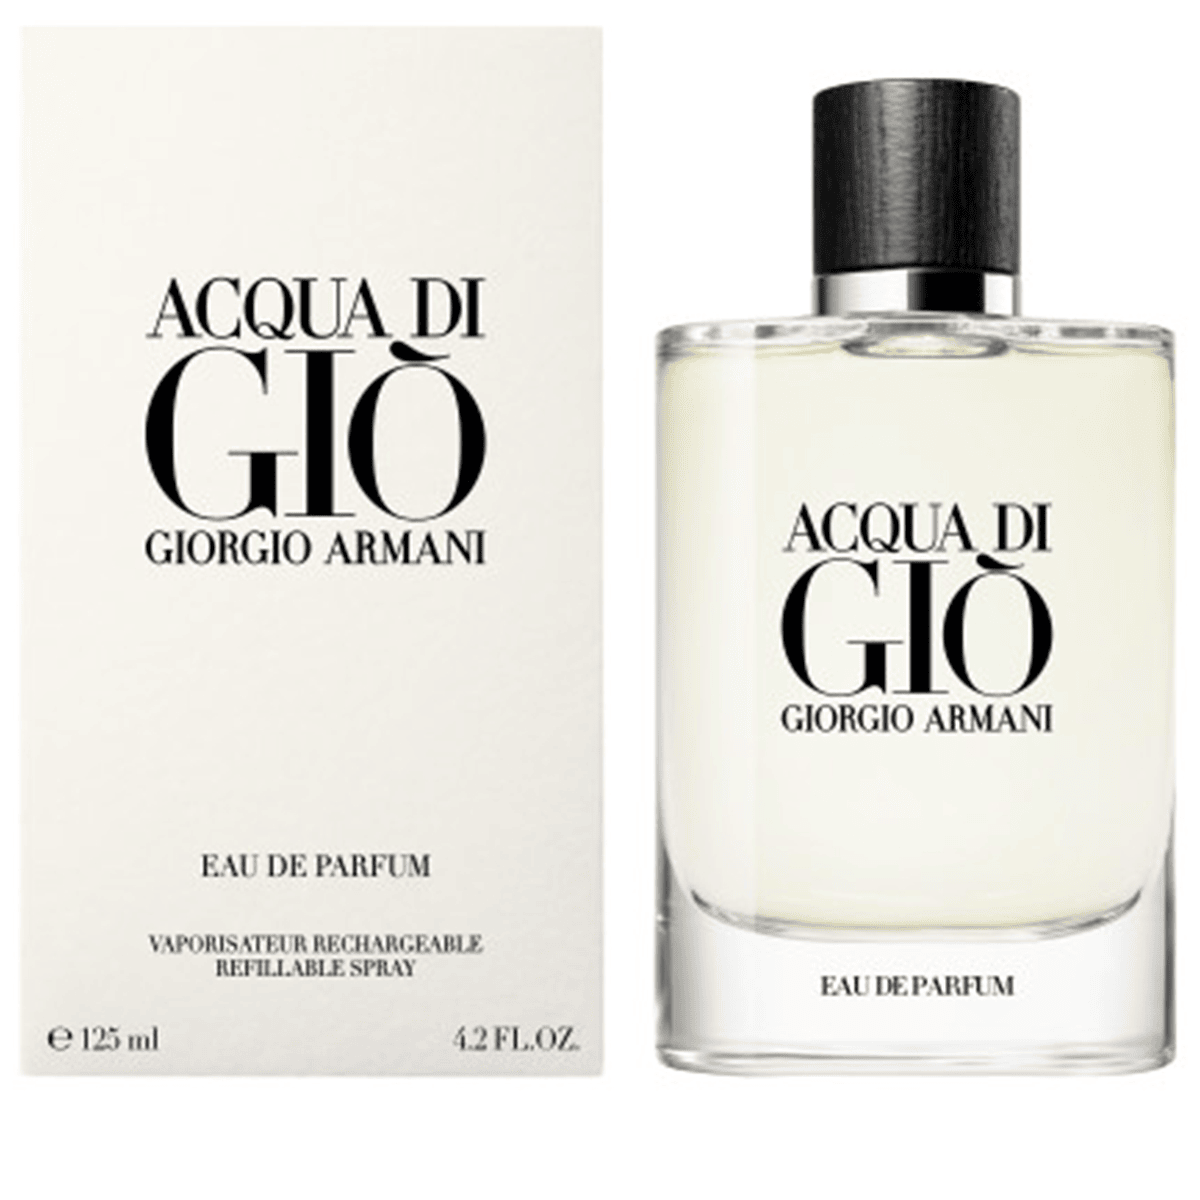 Giorgio Armani Acqua Di Gio for Men Eau de Parfum 125mL